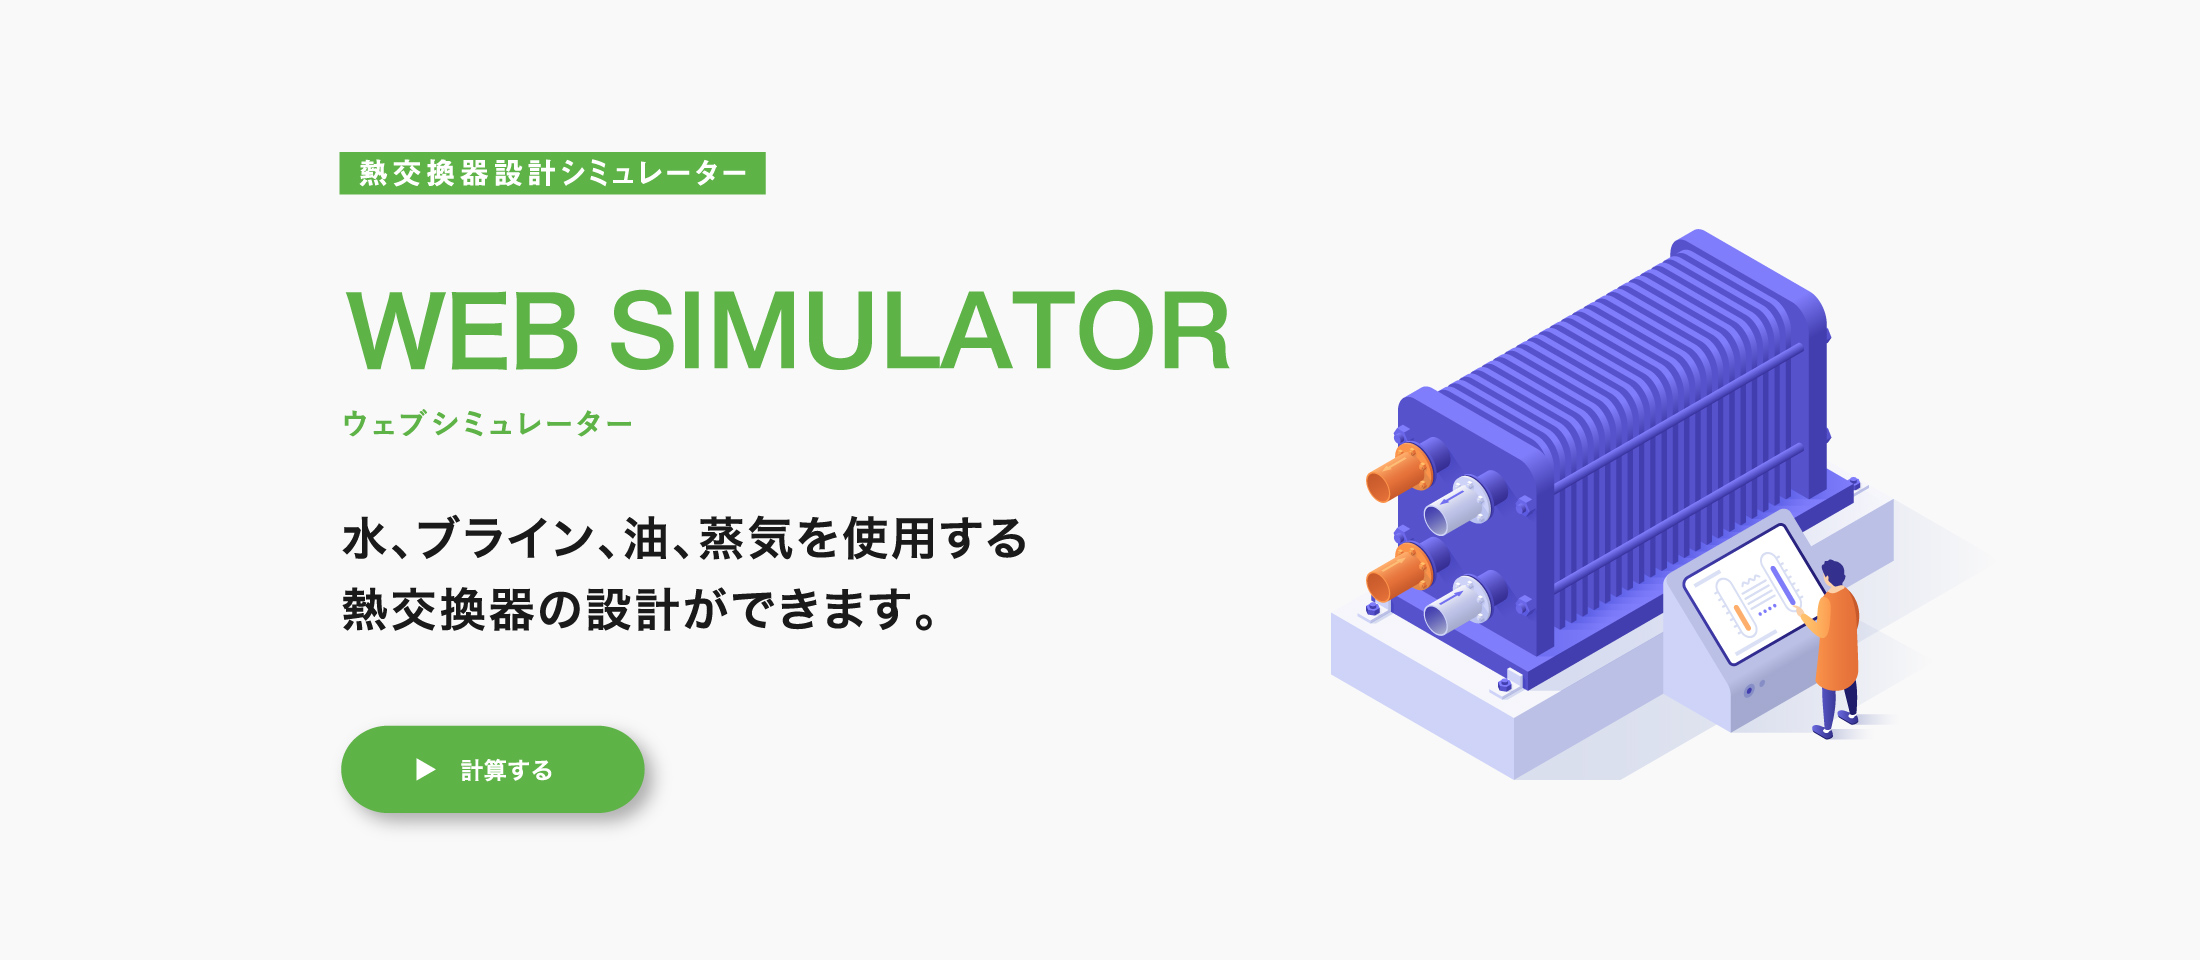 熱交換器設計シミュレーター WEB SIMULATOR ウェブシミュレーター 水、ブライン、油、蒸気を使用する熱交換器の設計ができます。